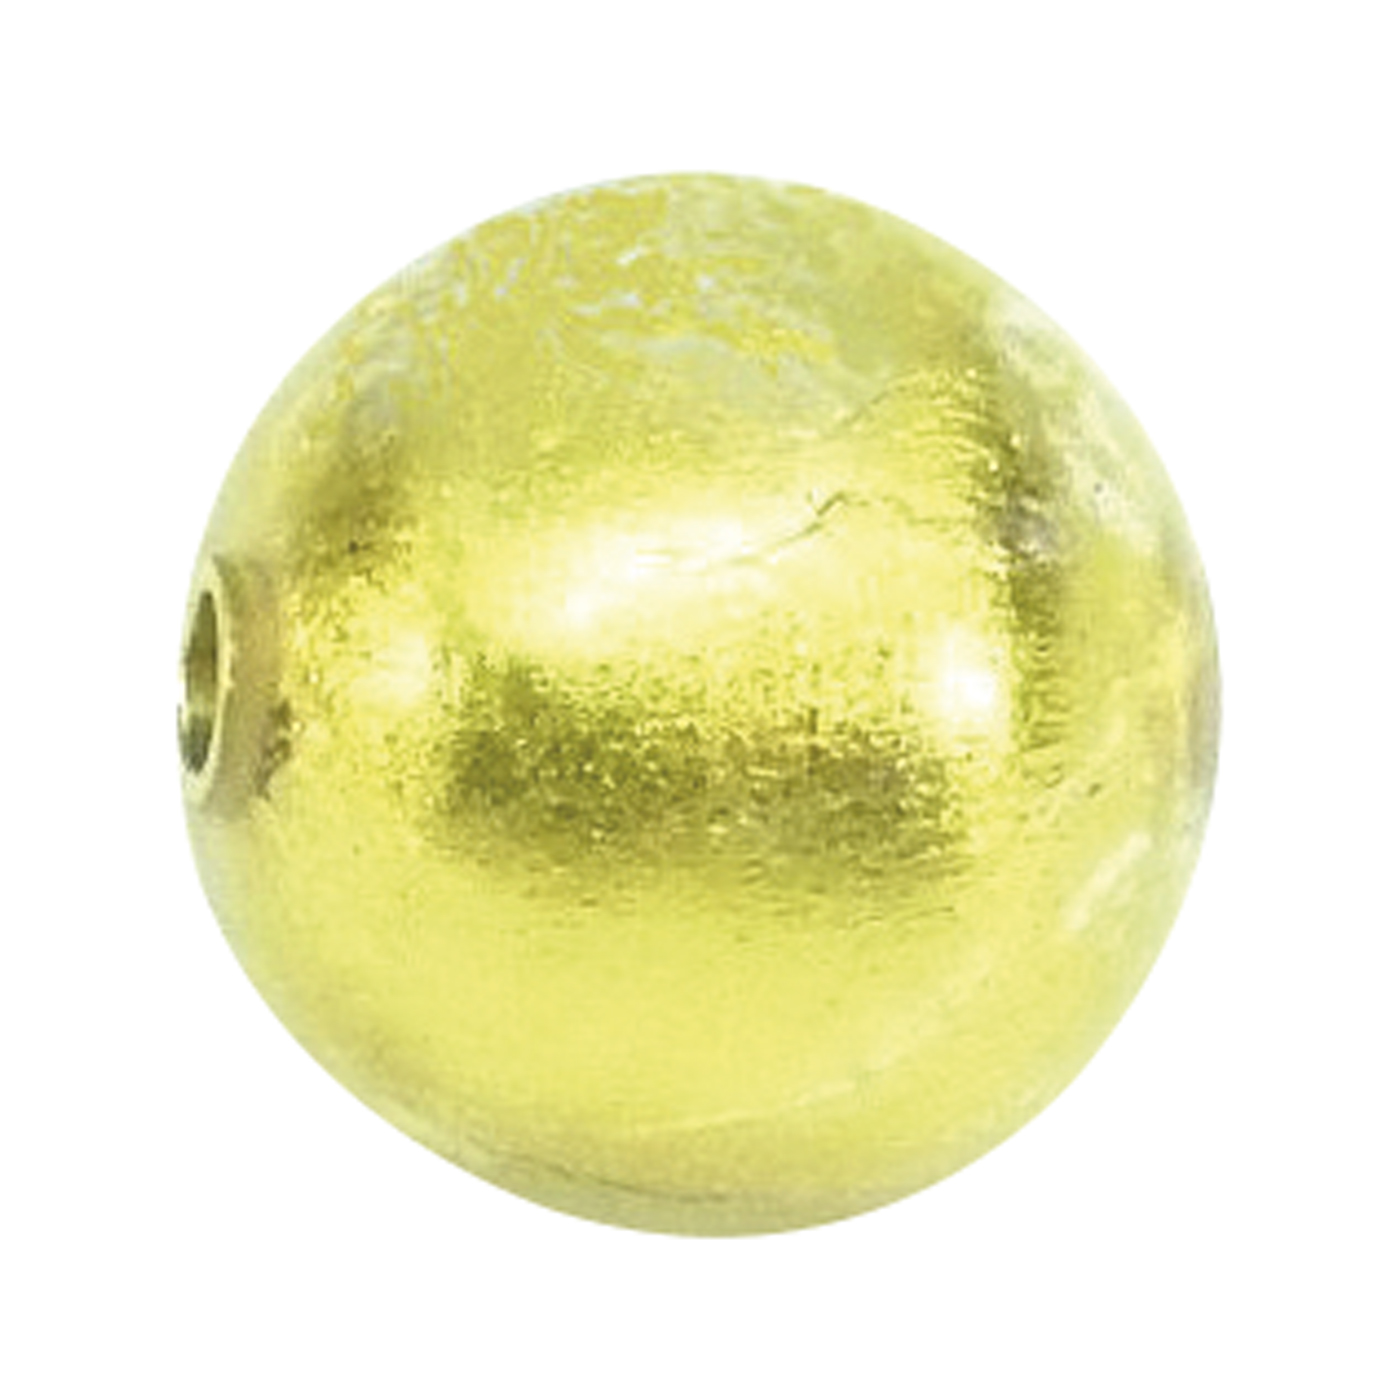 Wechselschließe, Muranoglas, Kugel, gold, ø 14 mm - 1 Stück